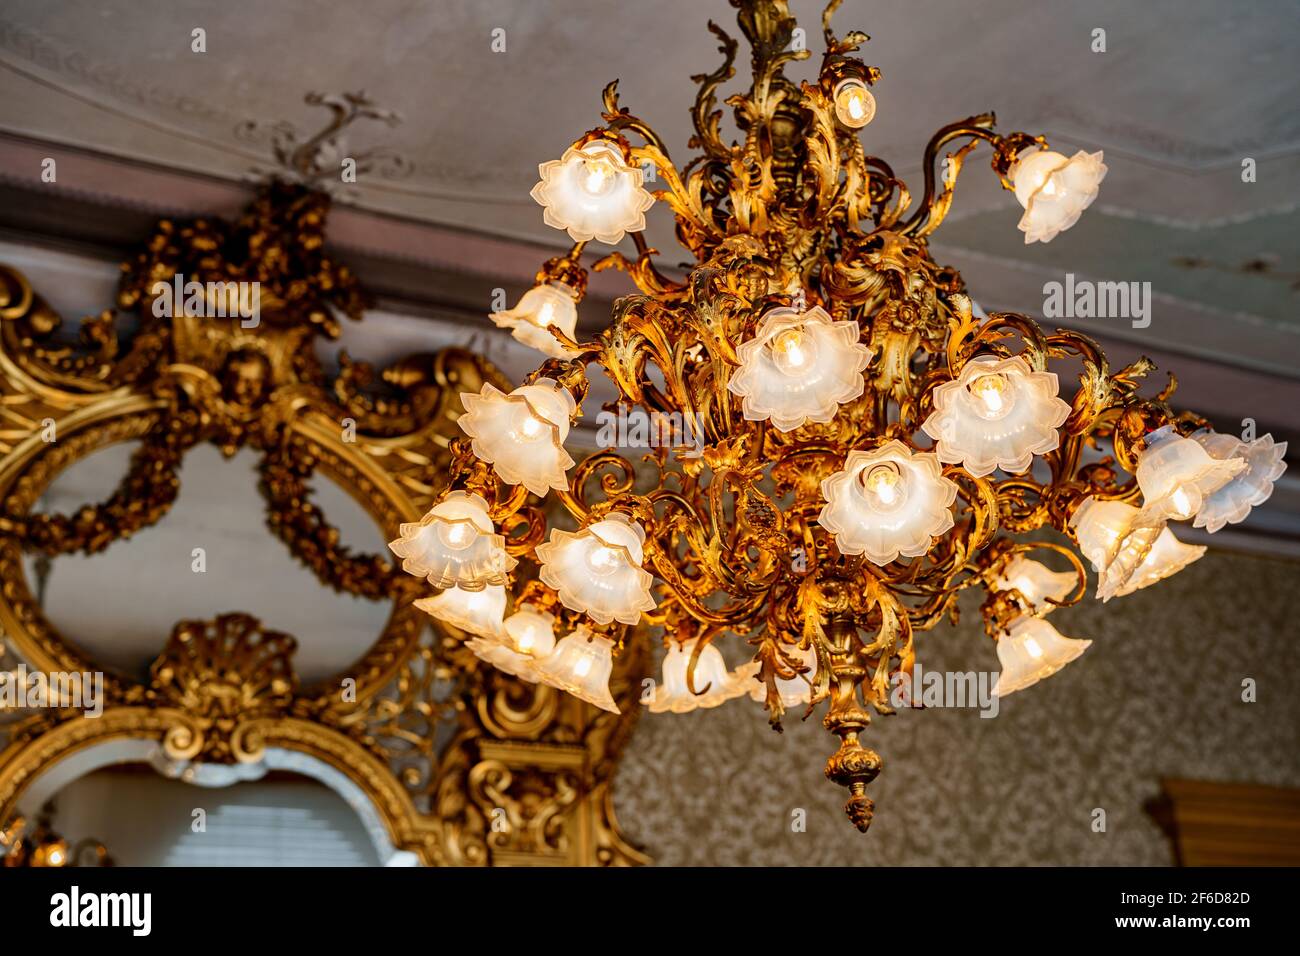 Großer goldener Kronleuchter mit floralen Farbtönen und floristischen Glühbirnen. Vor dem Hintergrund eines antiken Spiegels mit einem geschnitzten vergoldeten Rahmen. Stockfoto